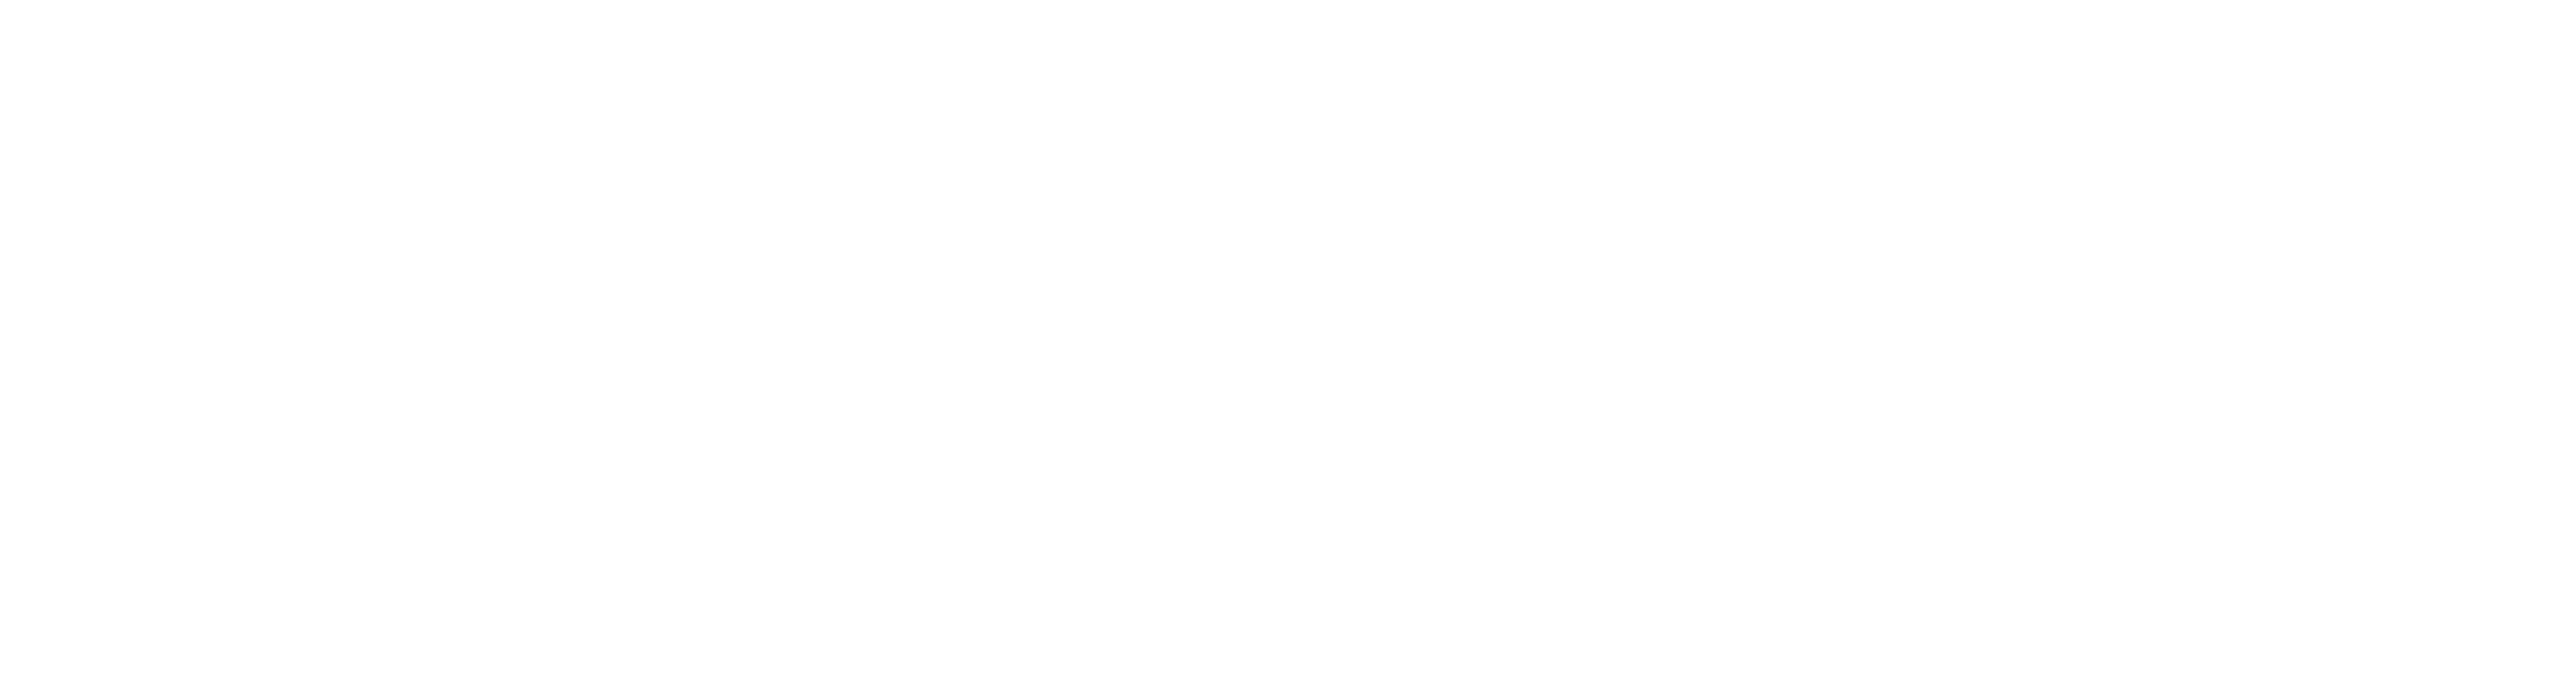 ES_Financiado_por_la_Unión_Europea_RGB_WHITE_Outline